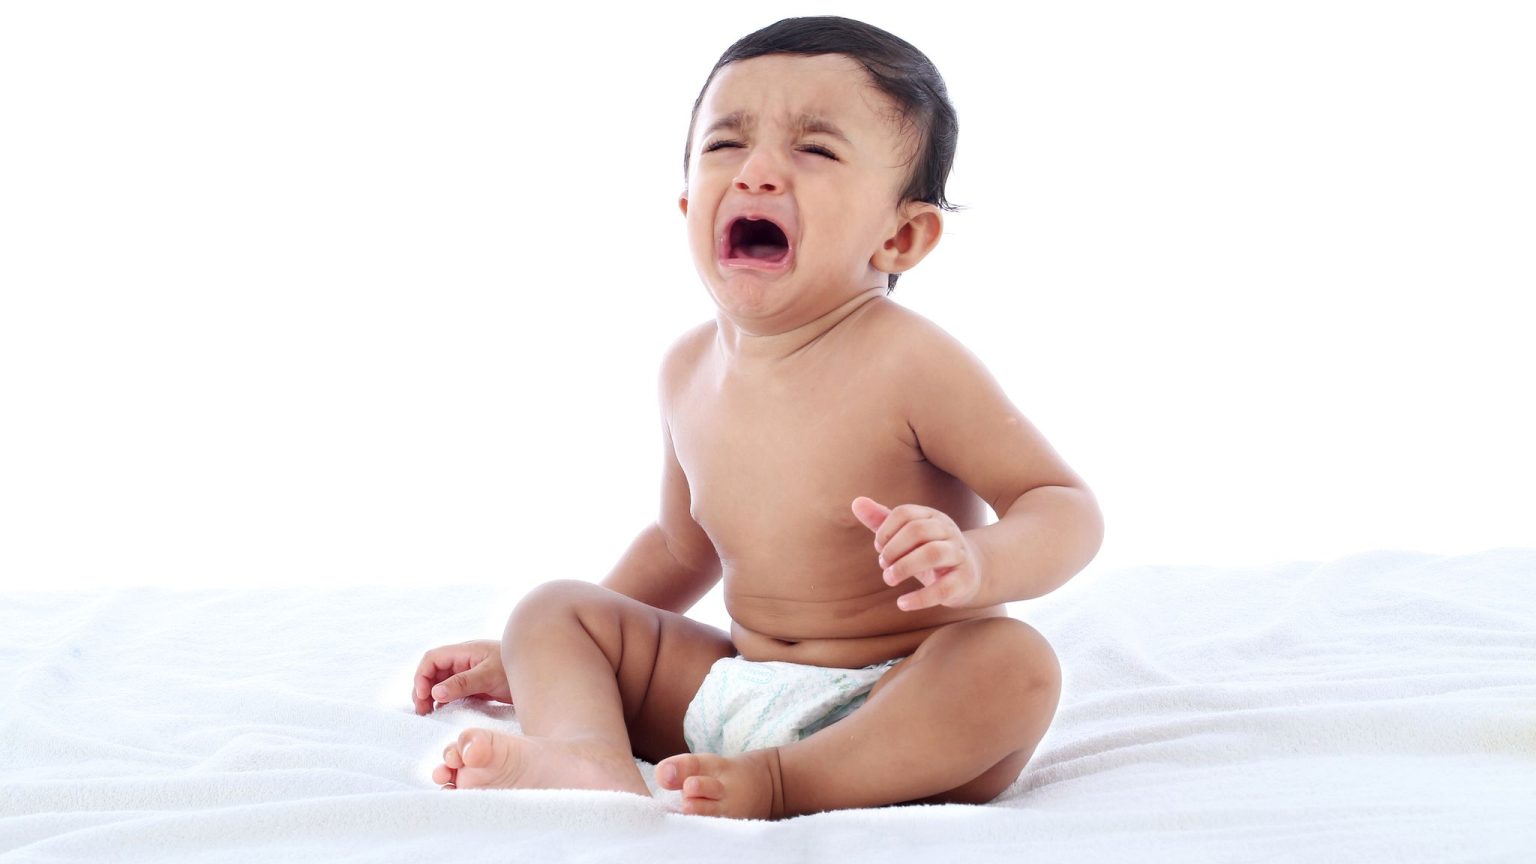 Ιαπωνία: Επιστήμονες αποκαλύπτουν το μυστικό για να σταματήσετε το κλάμα του μωρού